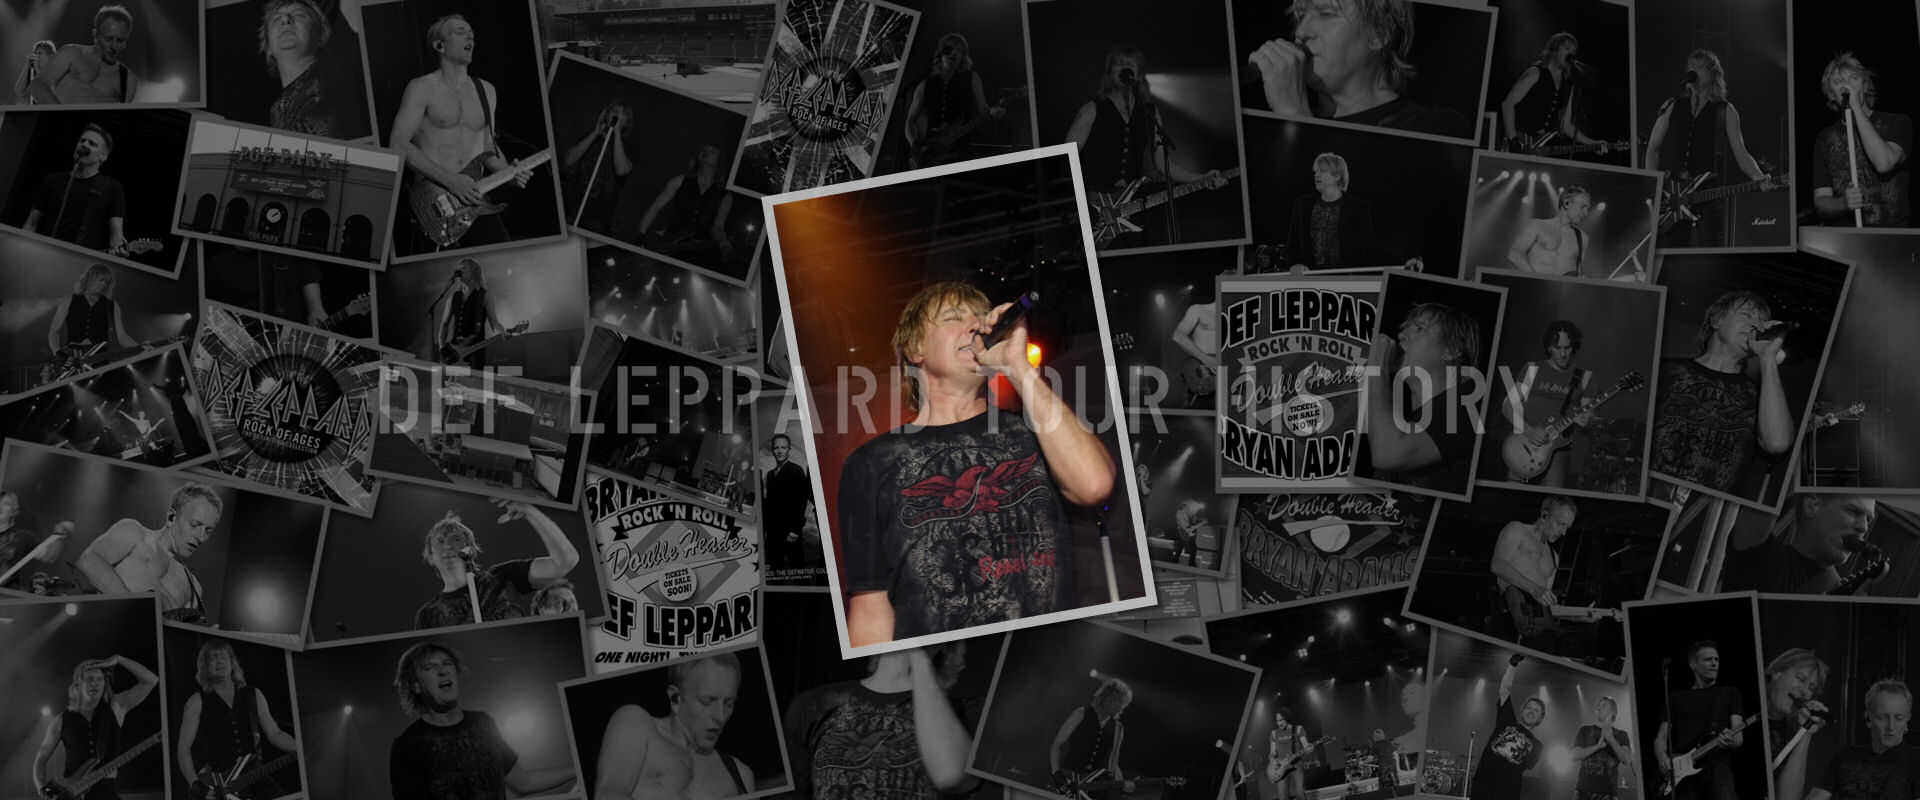 Def Leppard 2005.